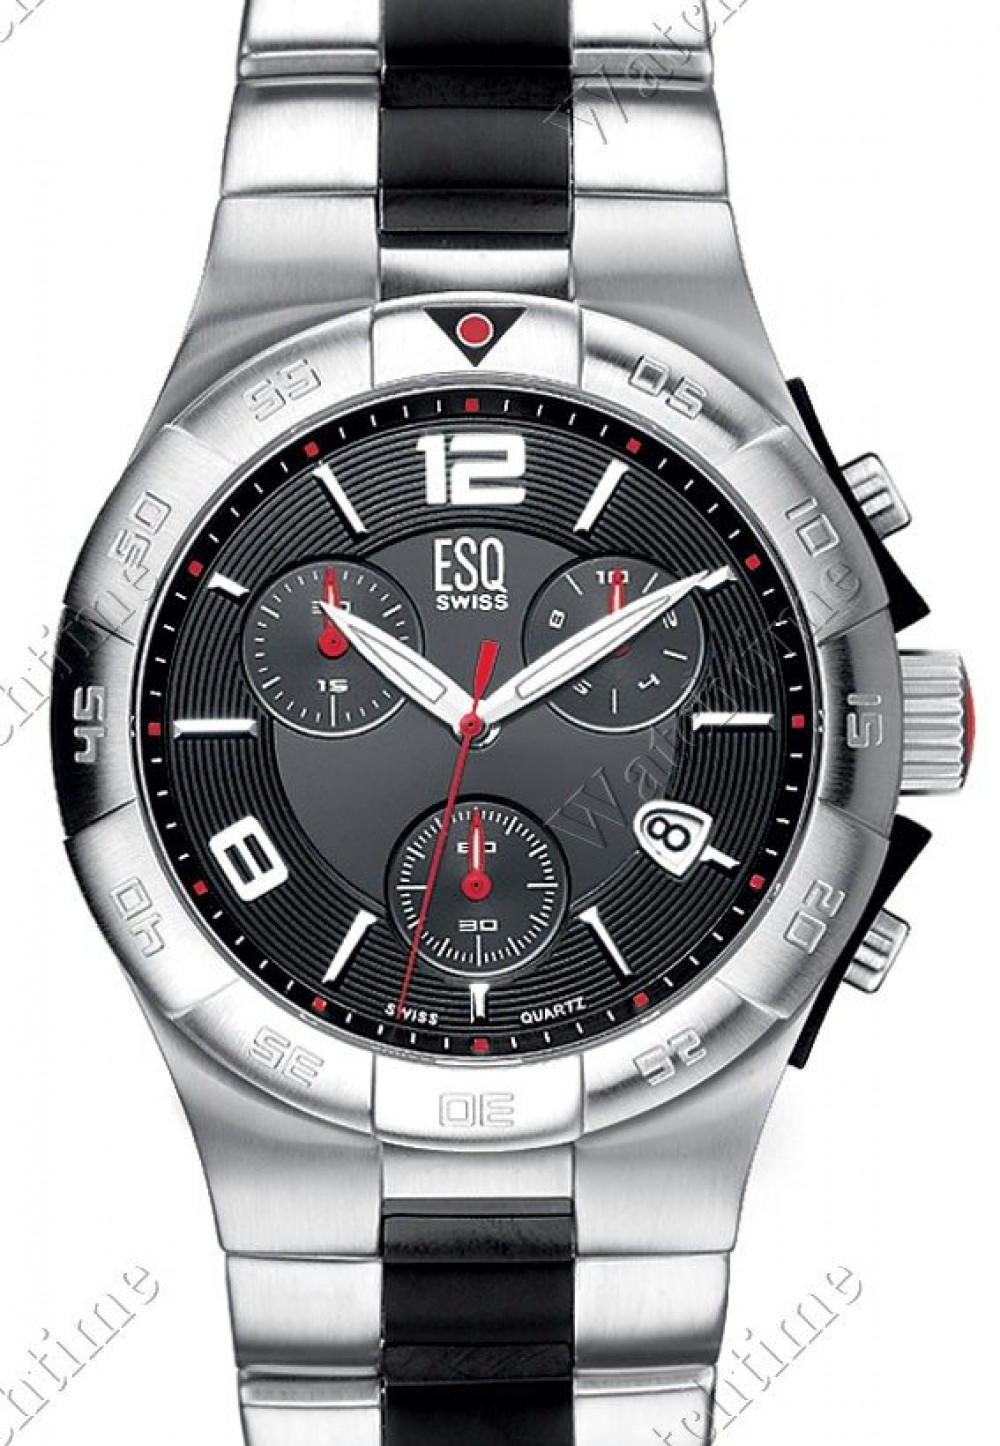 Zegarek firmy ESQ Swiss, model Rally